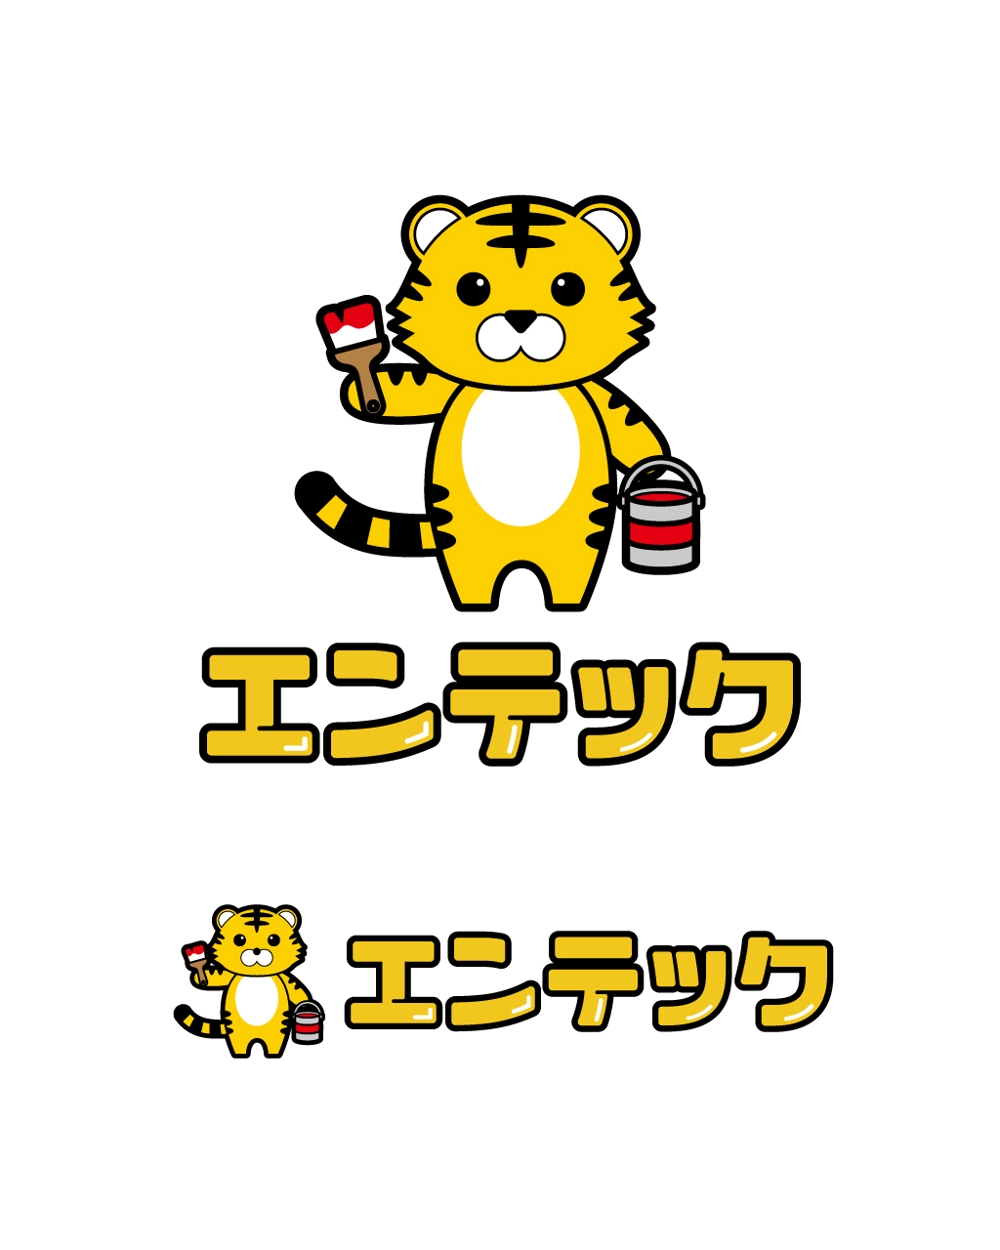 エンテック様-キャラクターロゴ-カラー2.jpg